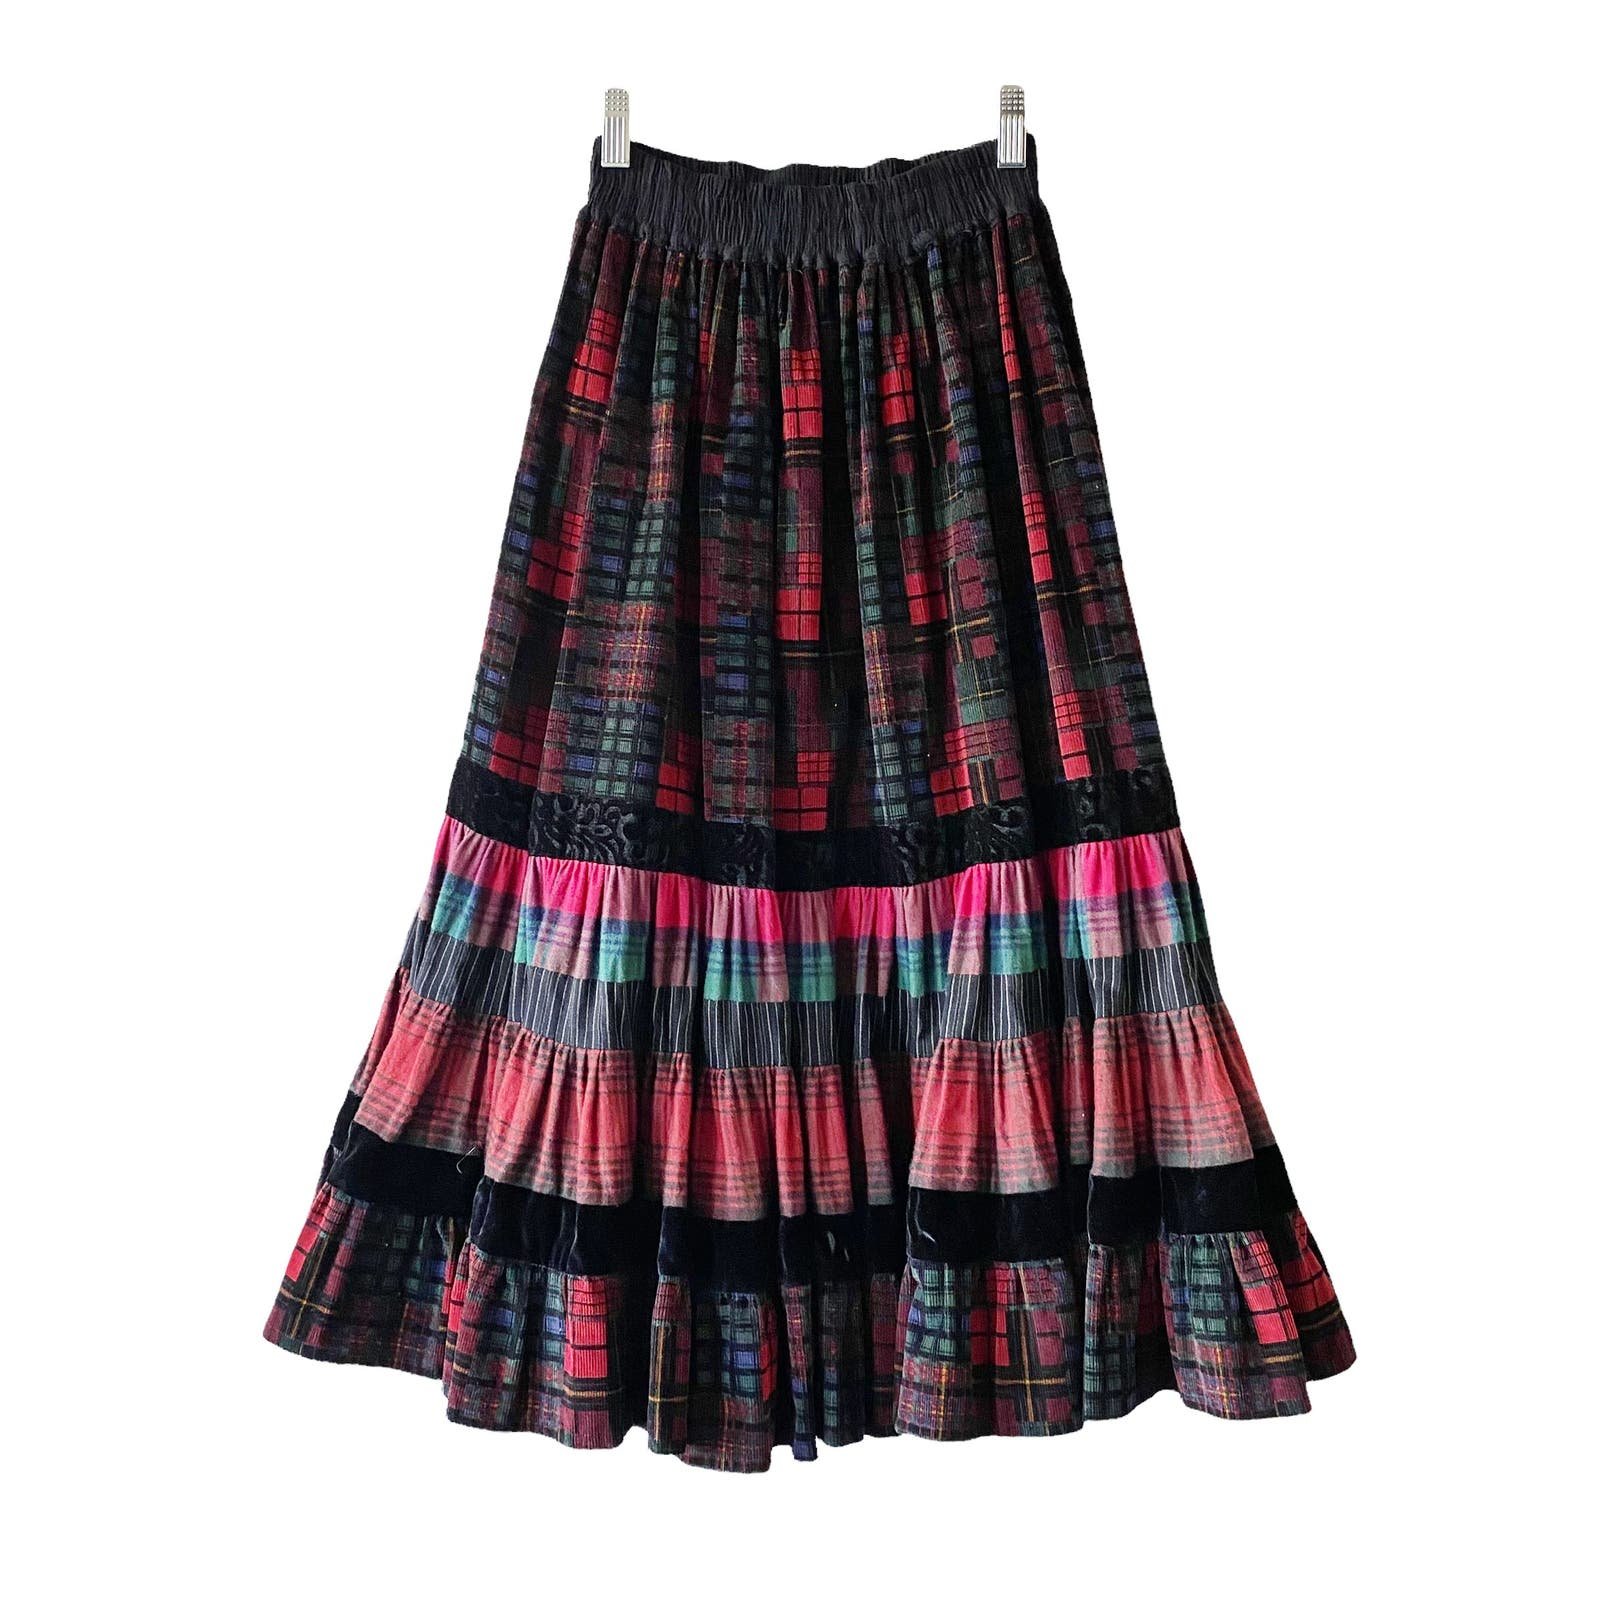 Simple Vintage Womens Plaid Corduroy Tiered Dark Academia Midi Skirt FRbLIJW3J Hot Sale